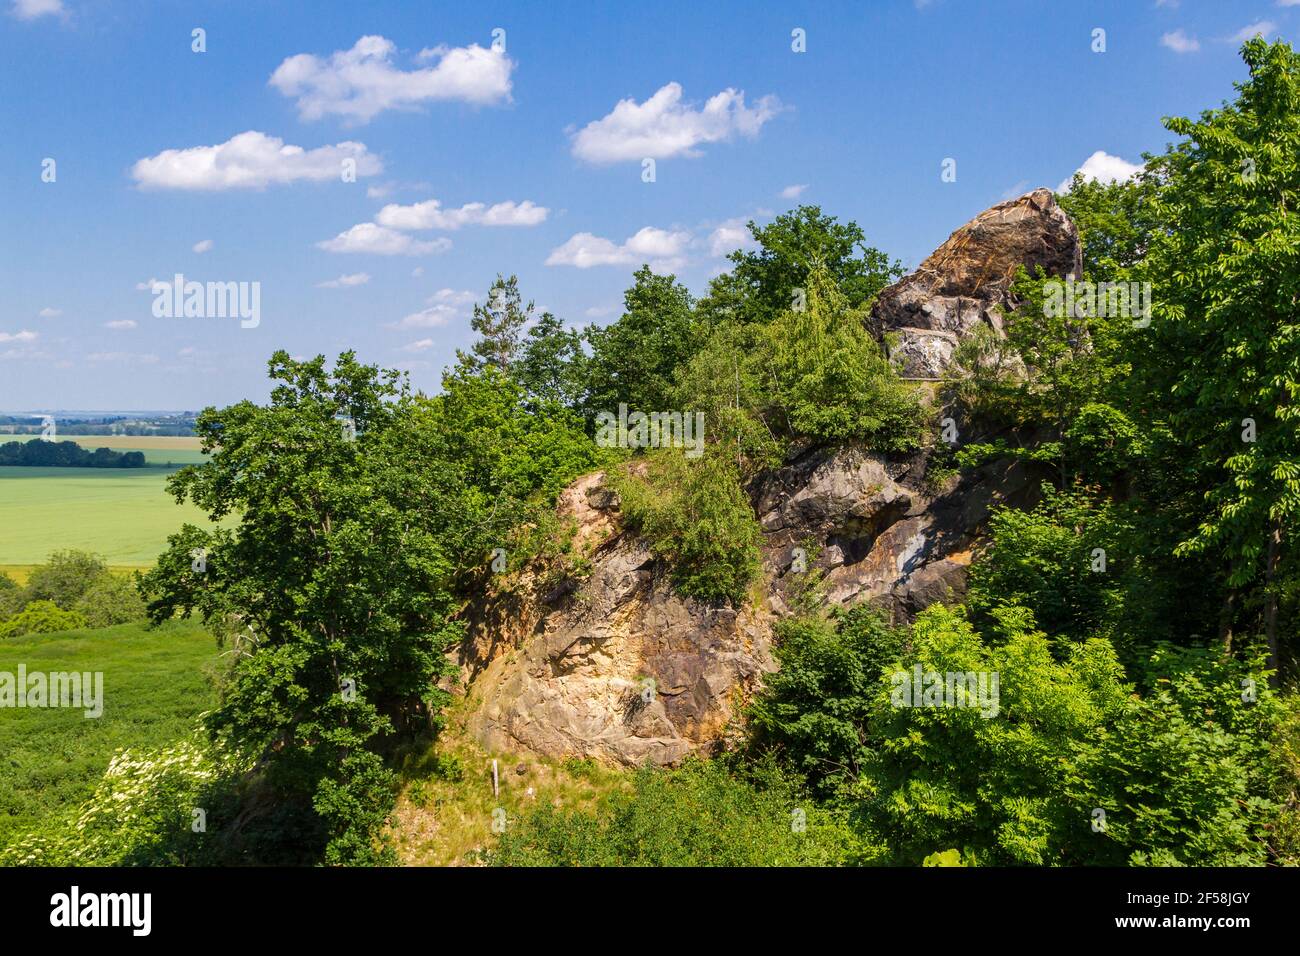 unterwegs auf dem Teufelsmauerstieg im Harz Teilstück Rieder blühende Landschaften Stock Photo